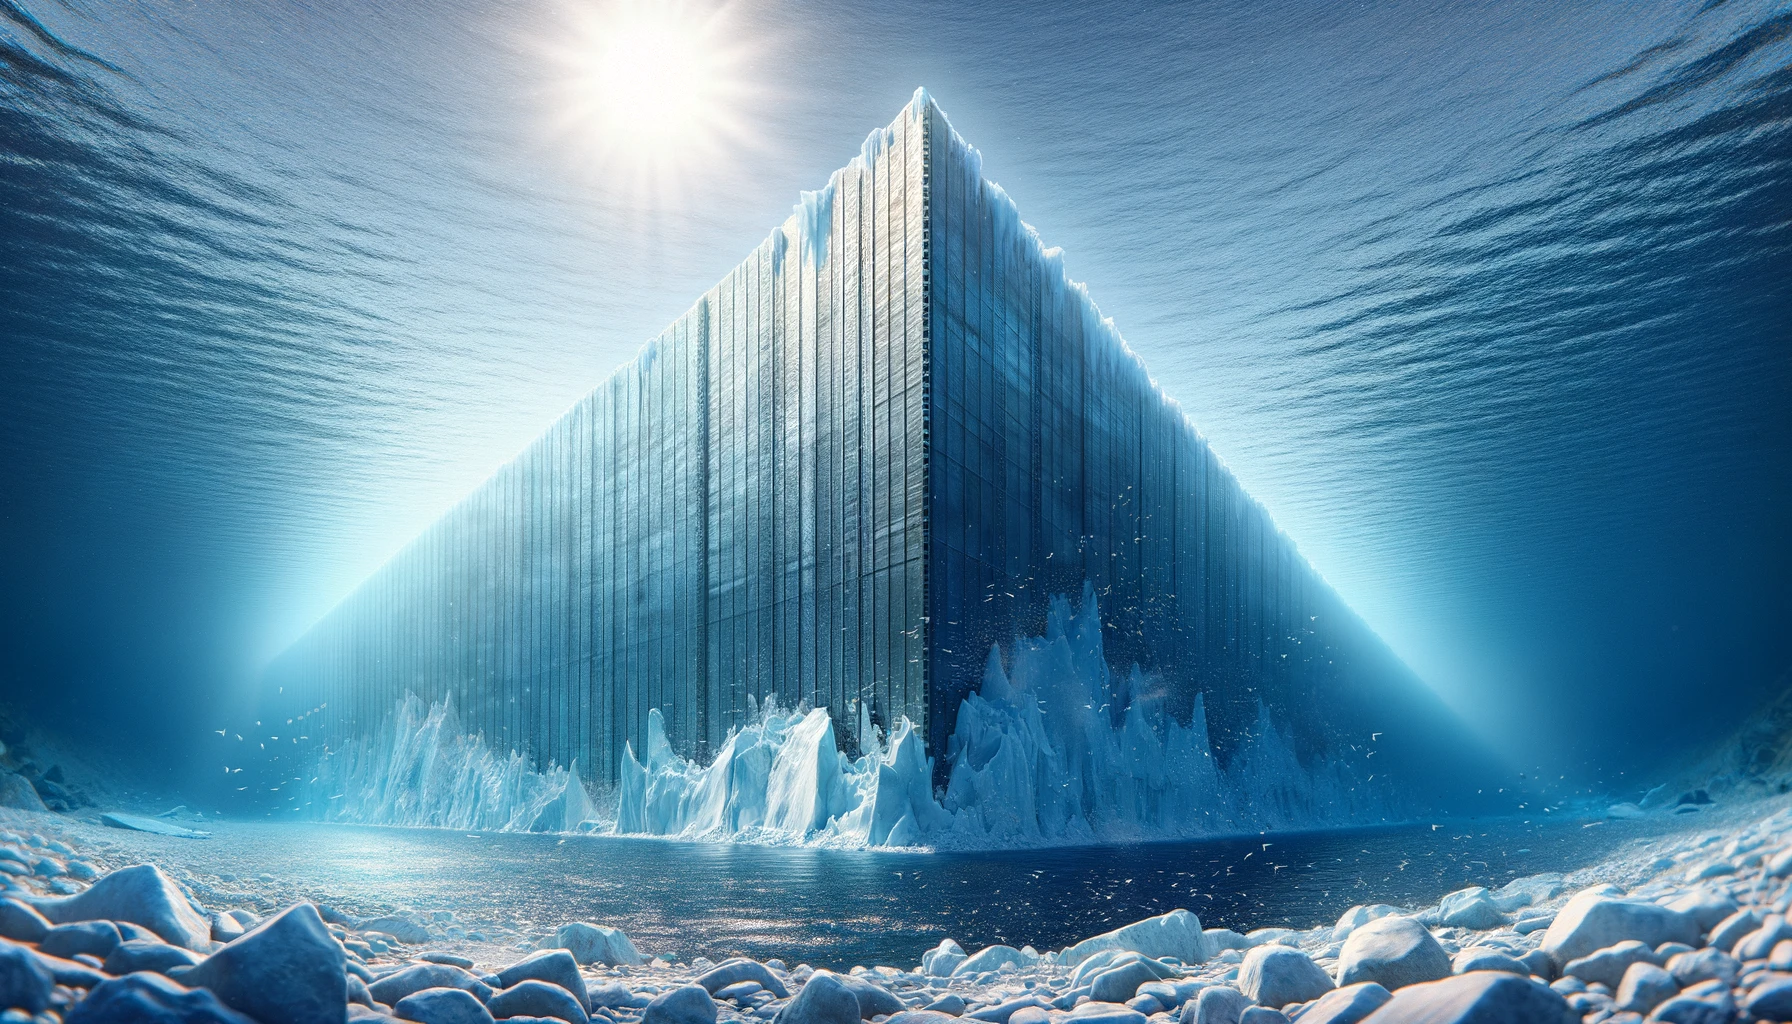 Le glacier de l'apocalypse menace de s'effondrer, et des ingénieurs envisagent de construire un mur de fer pour l'en empêcher. © Open AI, Dall-E (illustration générée par l'IA)